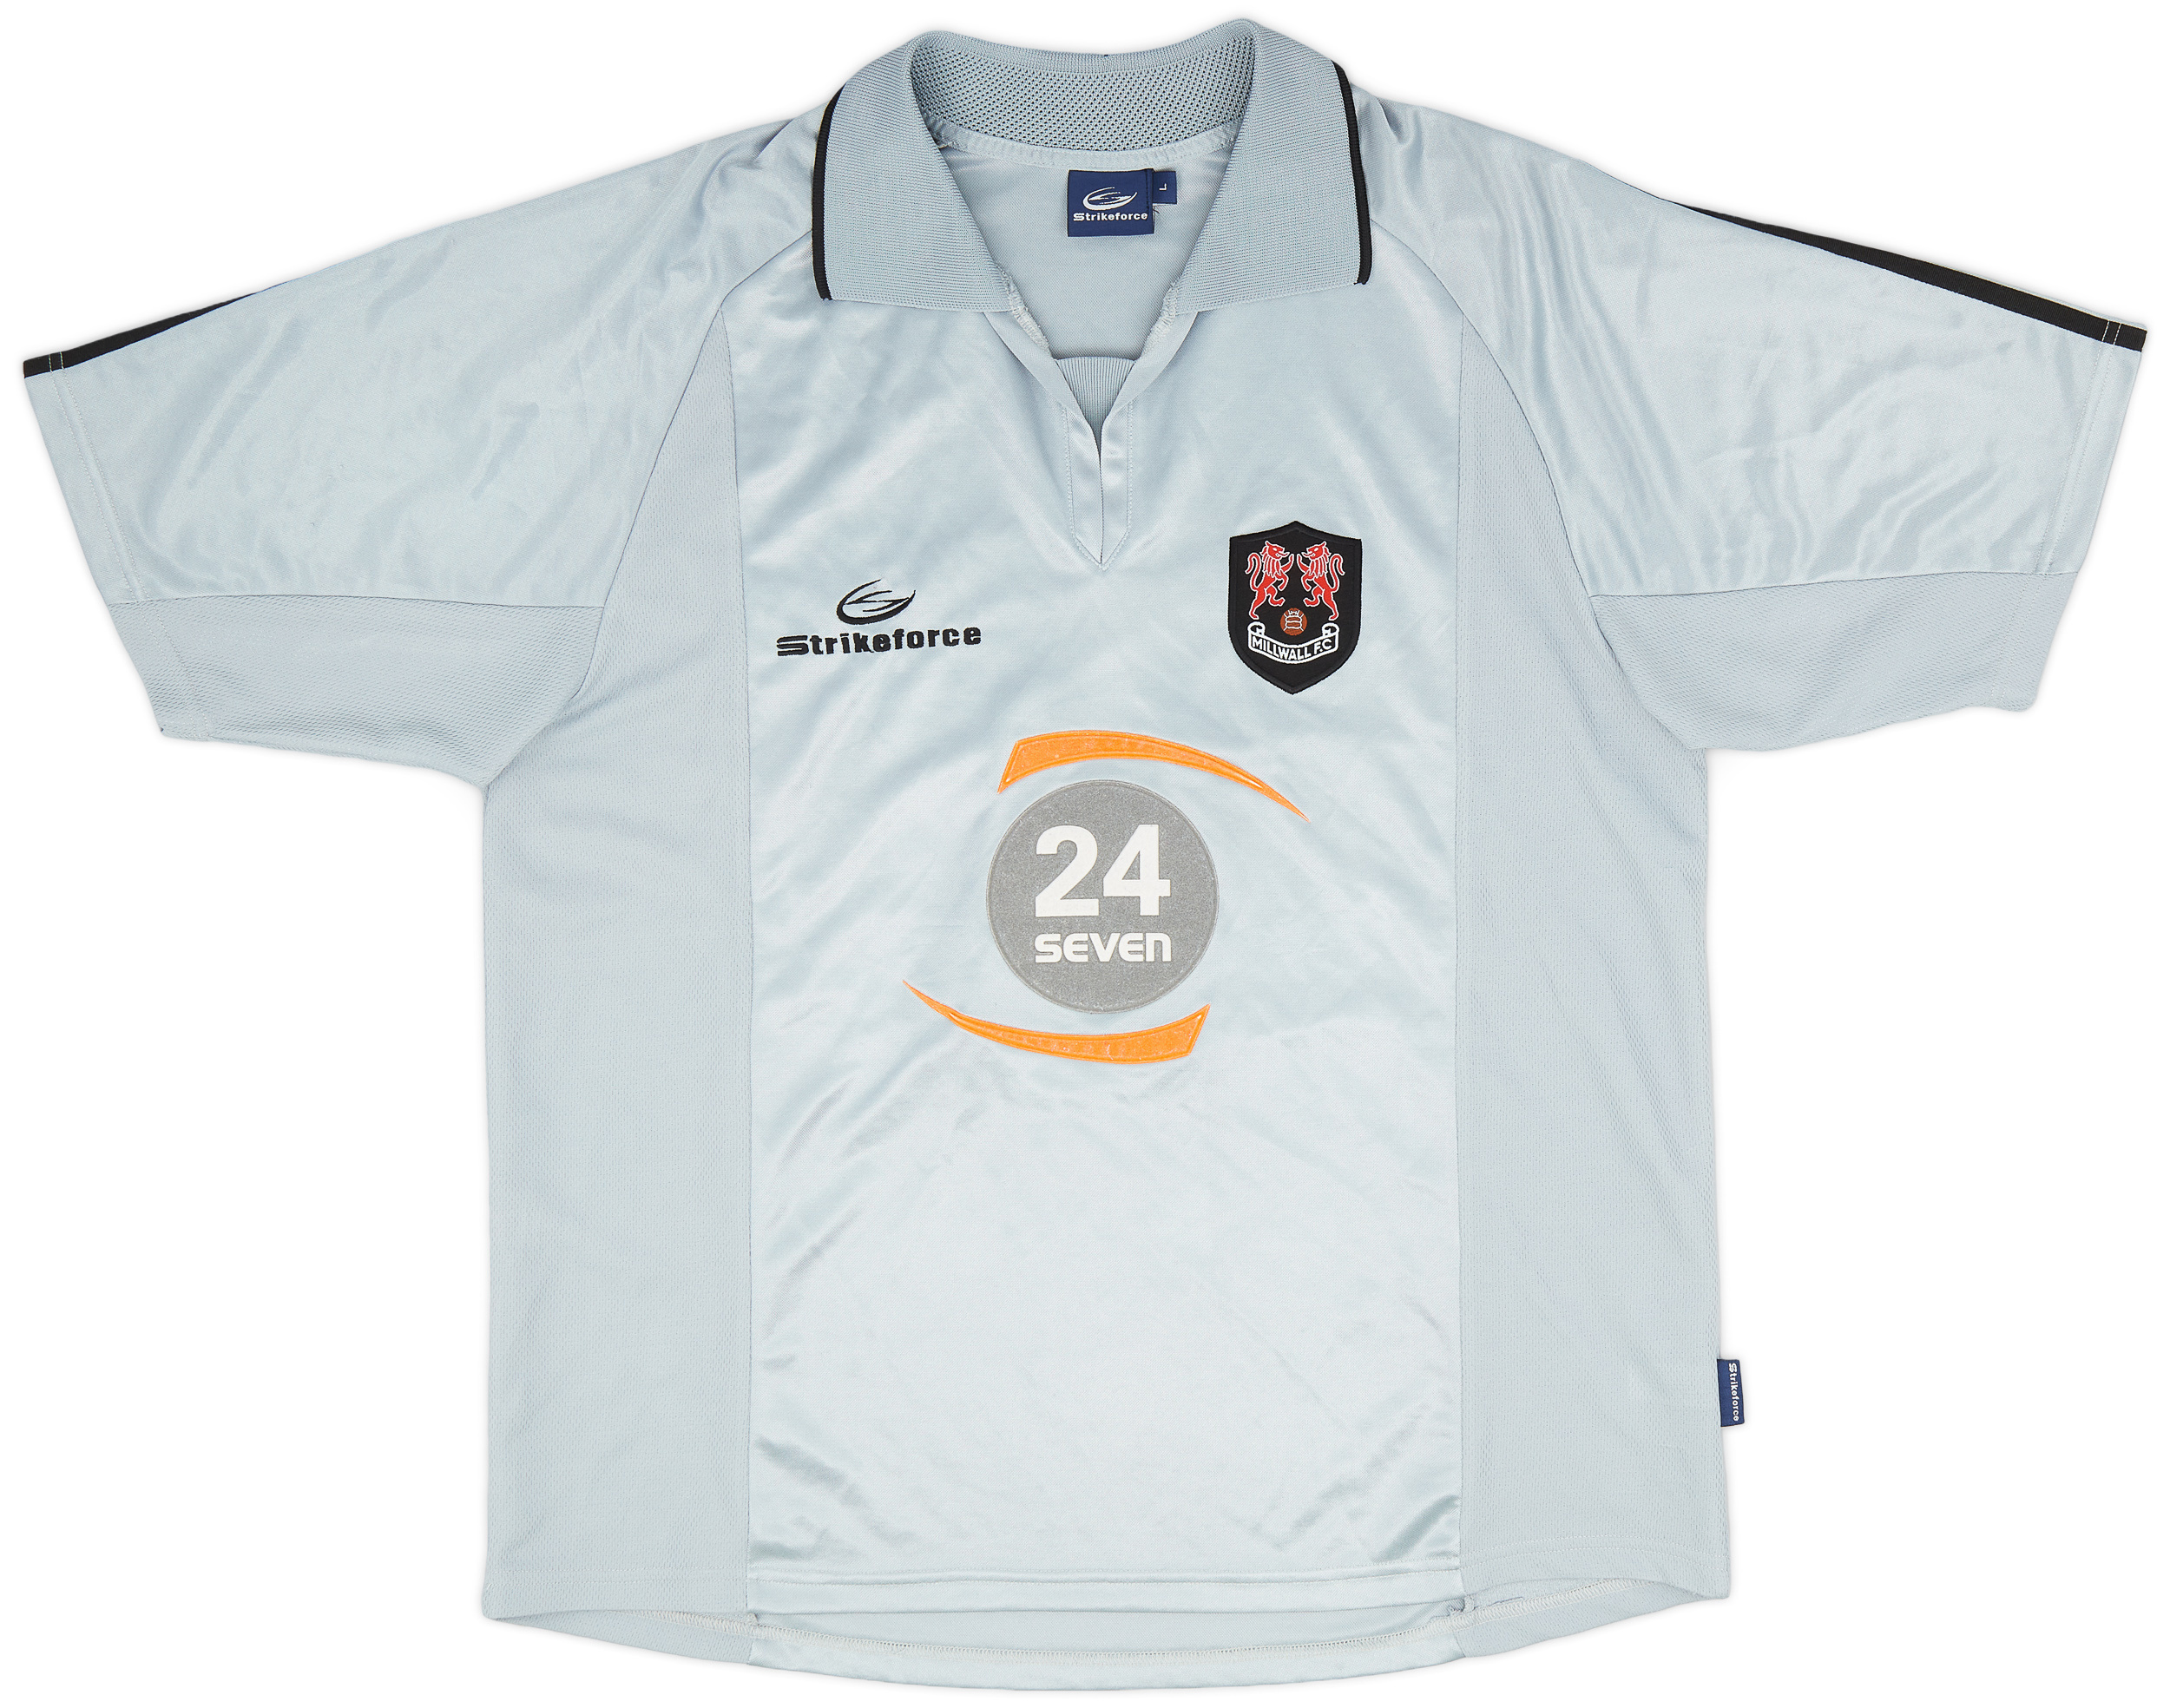 2002-03 Millwall Away Shirt - 9/10 - ()